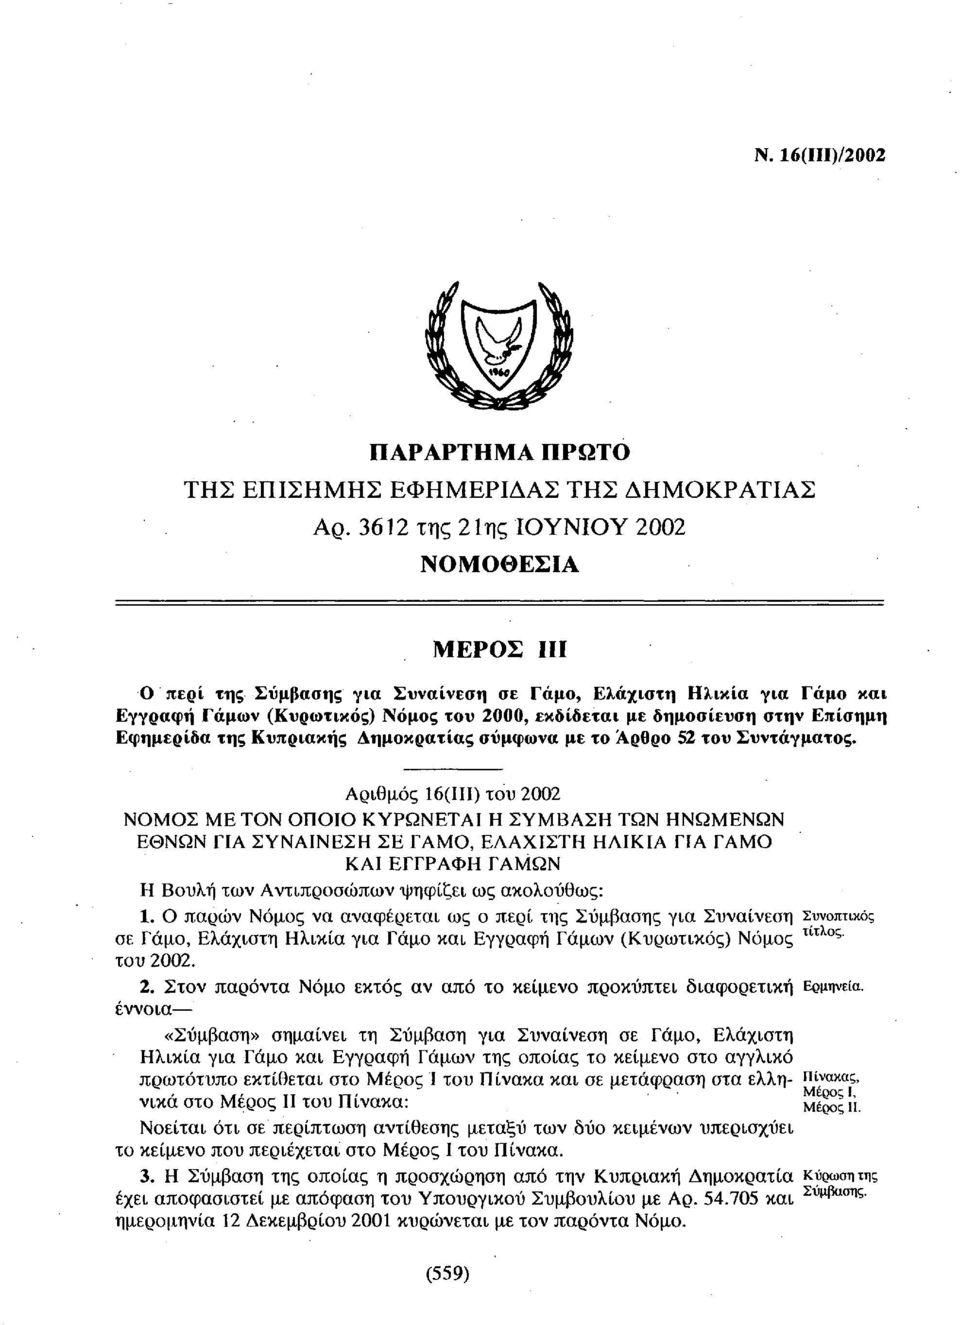 Εφημερίδα της Κυπριακής Δημοκρατίας σύμφωνα με το Άρθρο 52 του Συντάγματος.